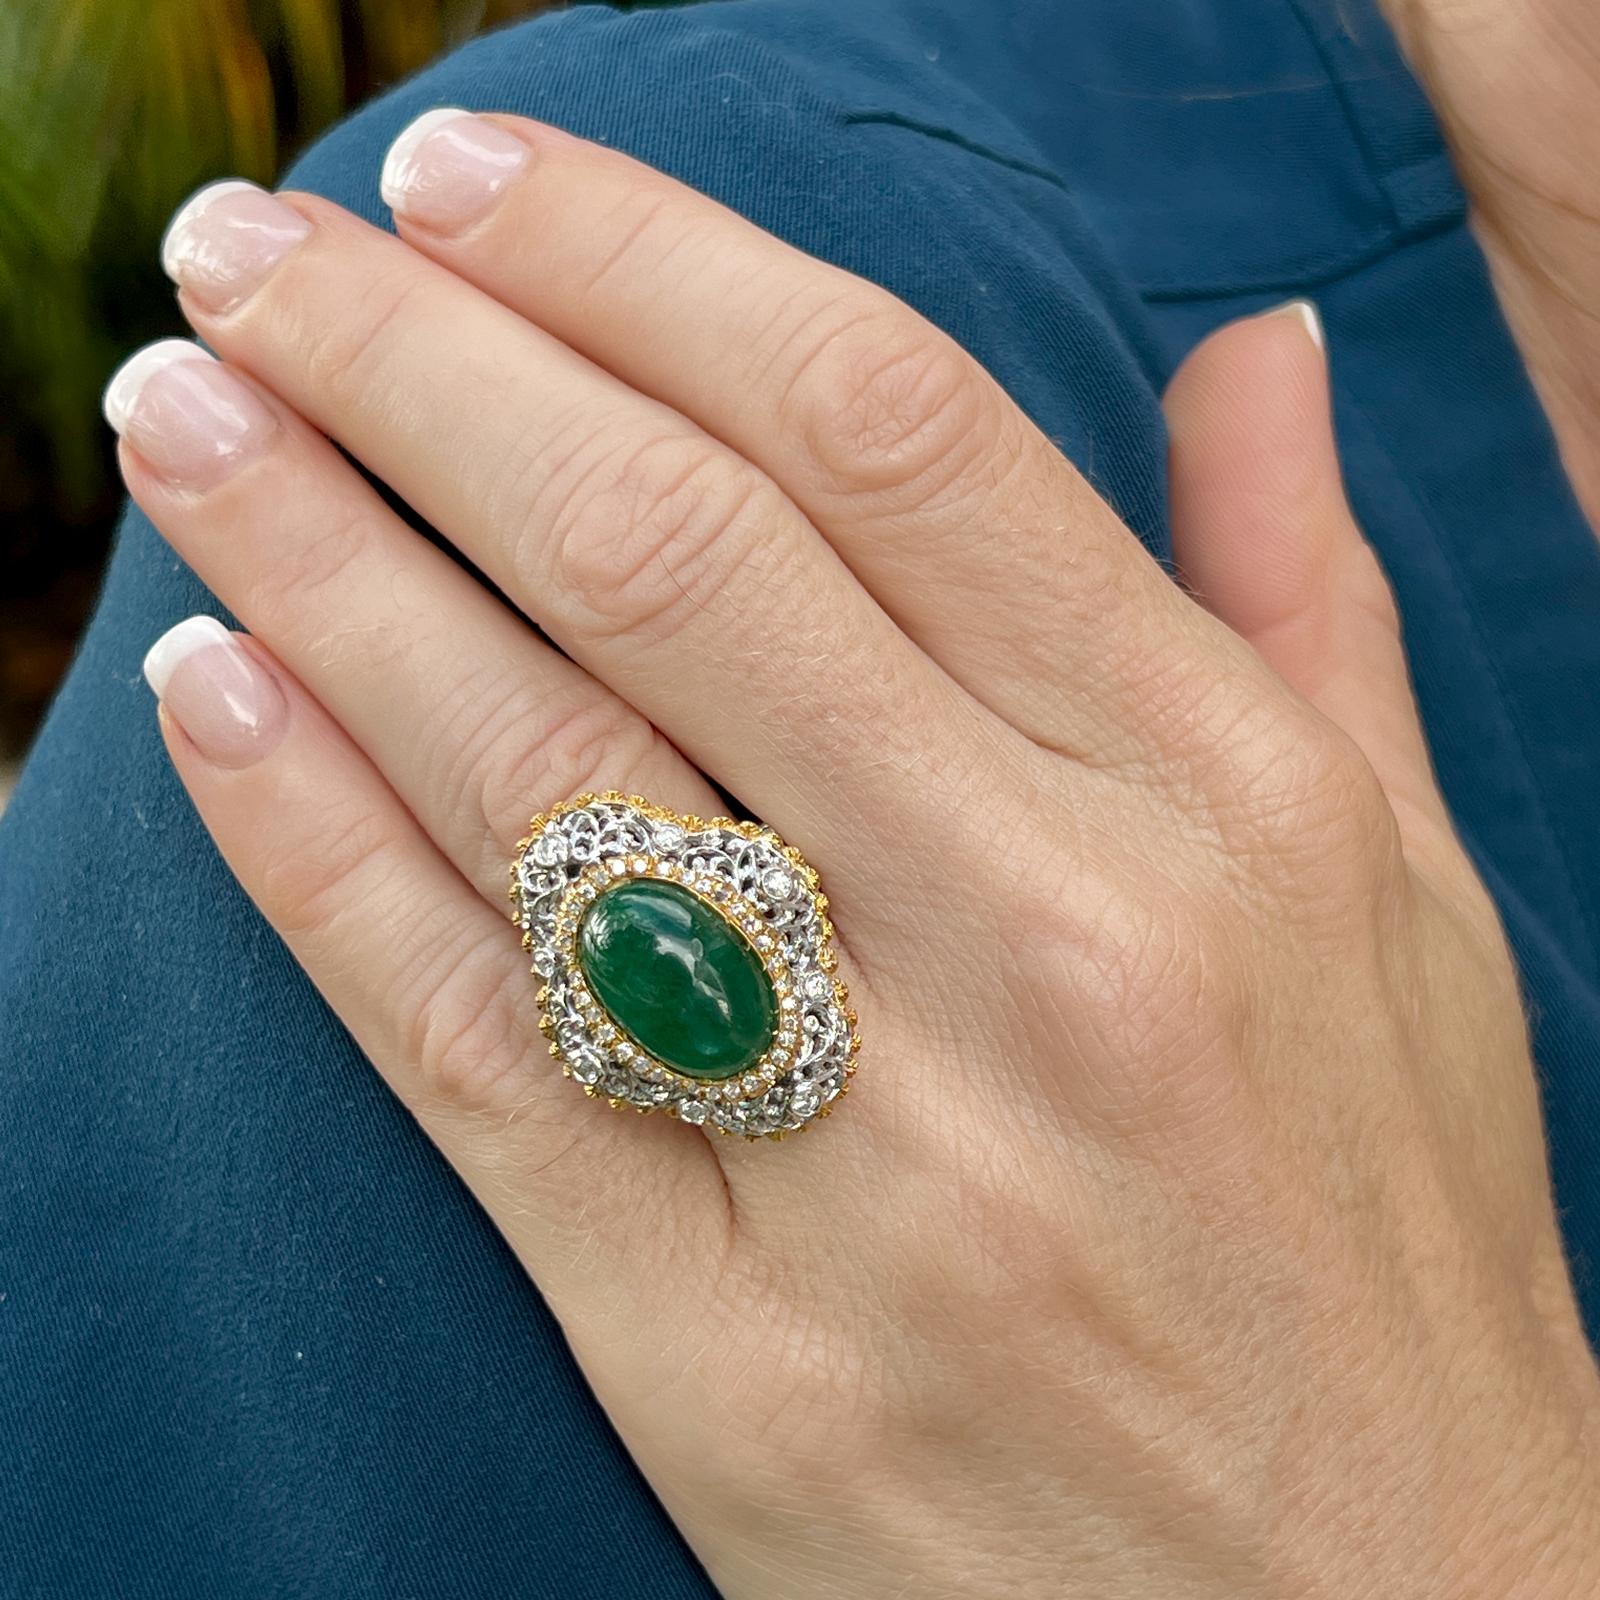 Atemberaubender Smaragd-Diamant-Cocktailring aus 18 Karat Gelb- und Weißgold. Der Ring zeigt einen ovalen Cabochon hellgrünen Smaragd mit einem Gewicht von etwa 8,00 Karat. Der natürliche Smaragd ist mit umlaufenden, in Zacken und Lünetten gefassten